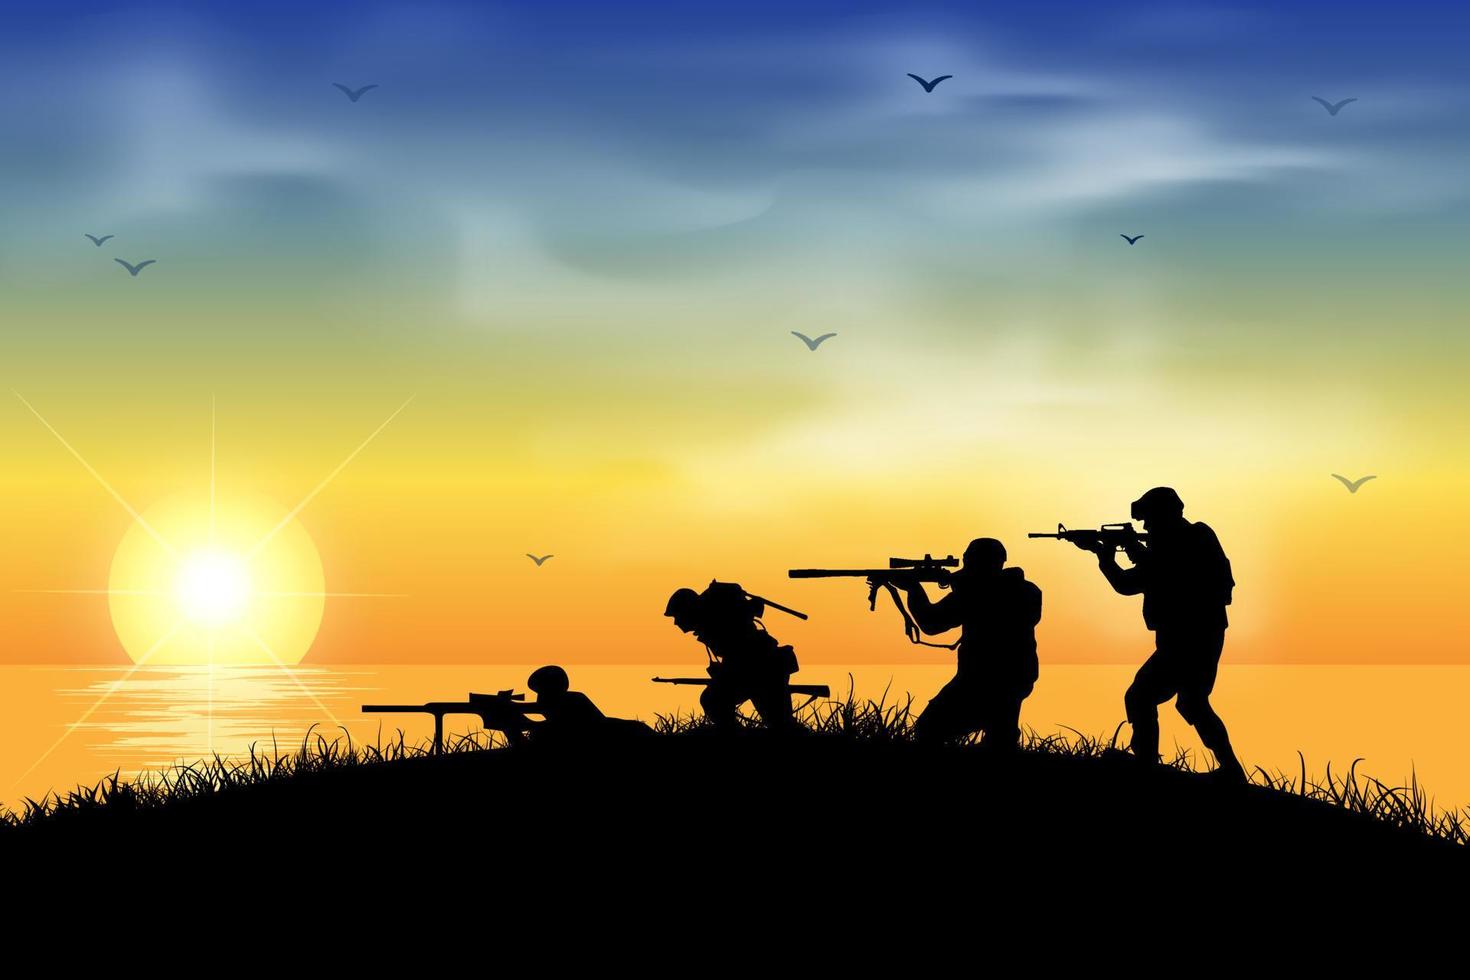 coup de silhouette d'un soldat tenant un pistolet avec fond de coucher de soleil. silhouette de soldat avec une arme à feu sur fond de coucher de soleil. soldats de silhouette combattant dans l'illustration vectorielle de guerre. vecteur